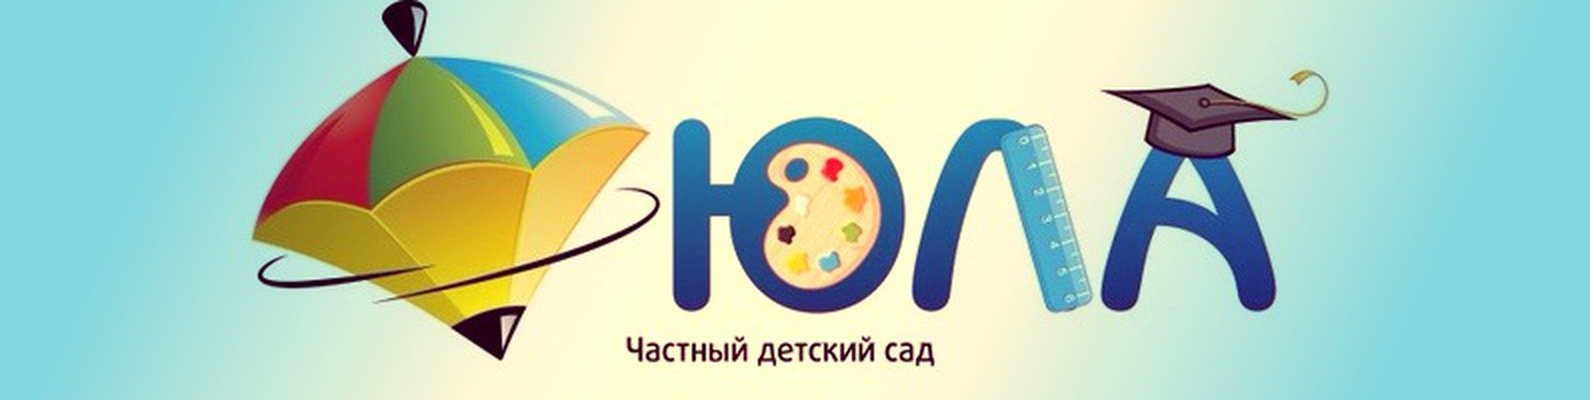 Детский центр Юла логотип